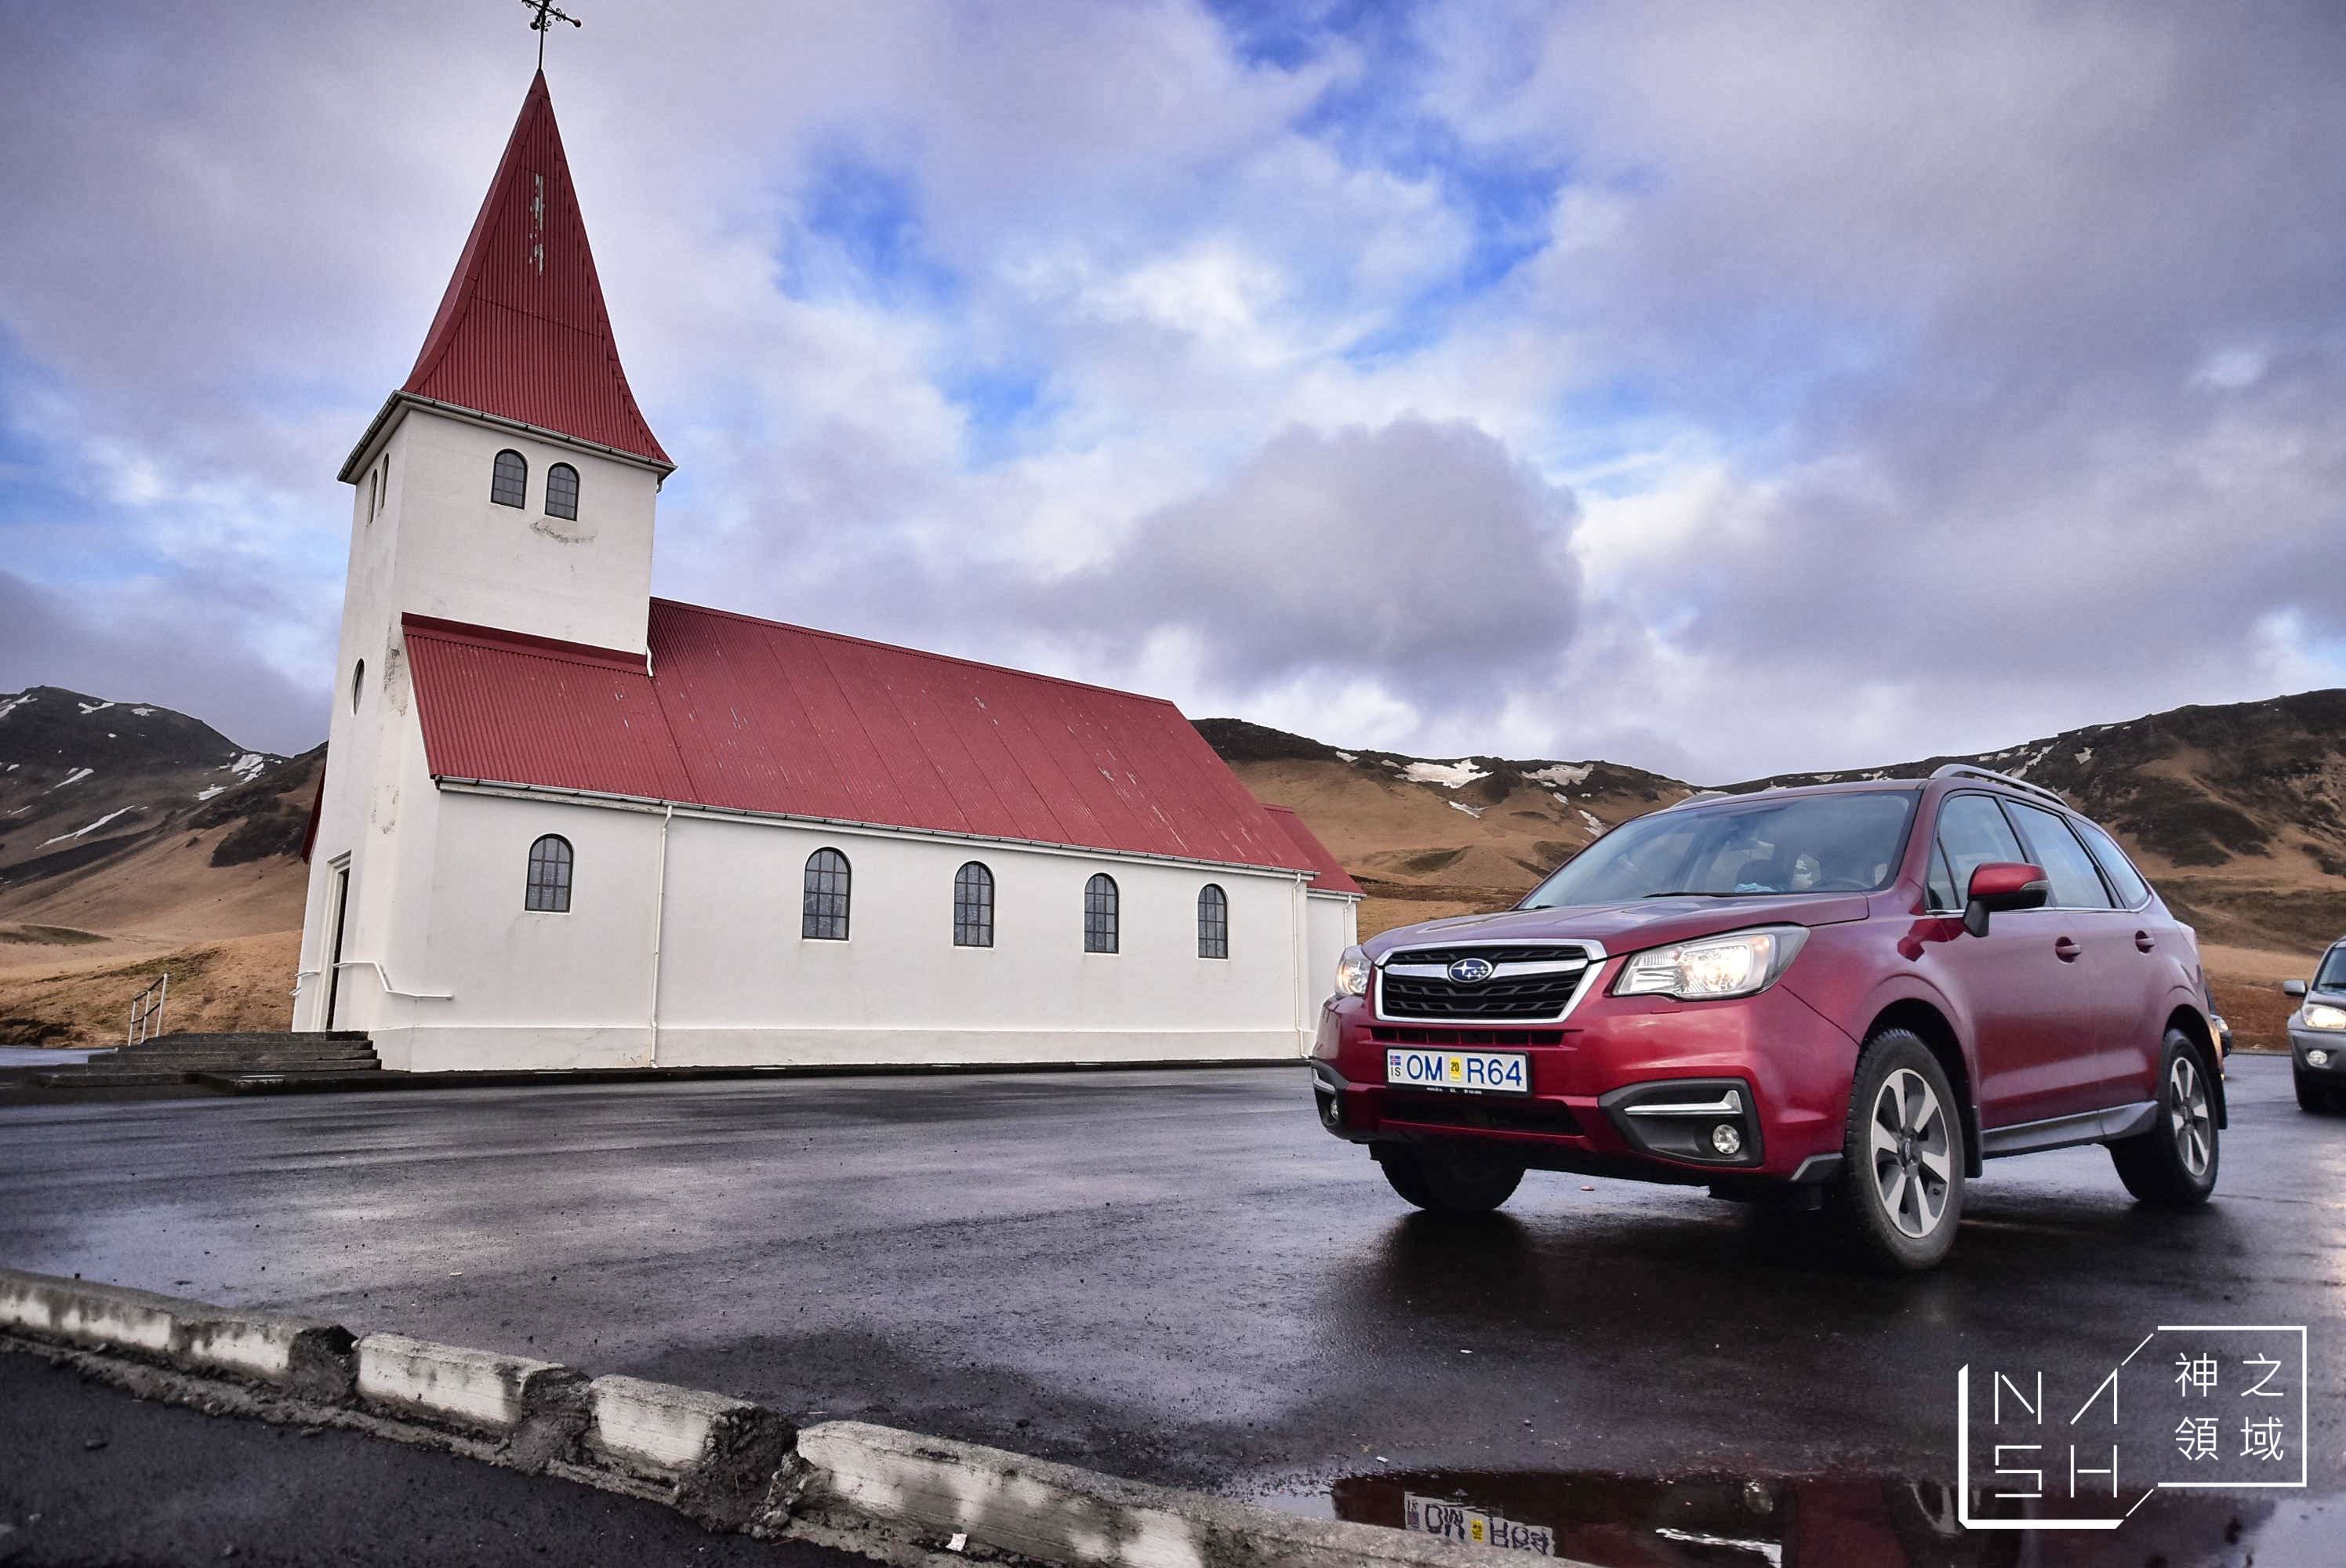 維克教堂,vik church,Vik i Myrdal Church,冰島自由行環島景點推薦,冰島自助景點推薦